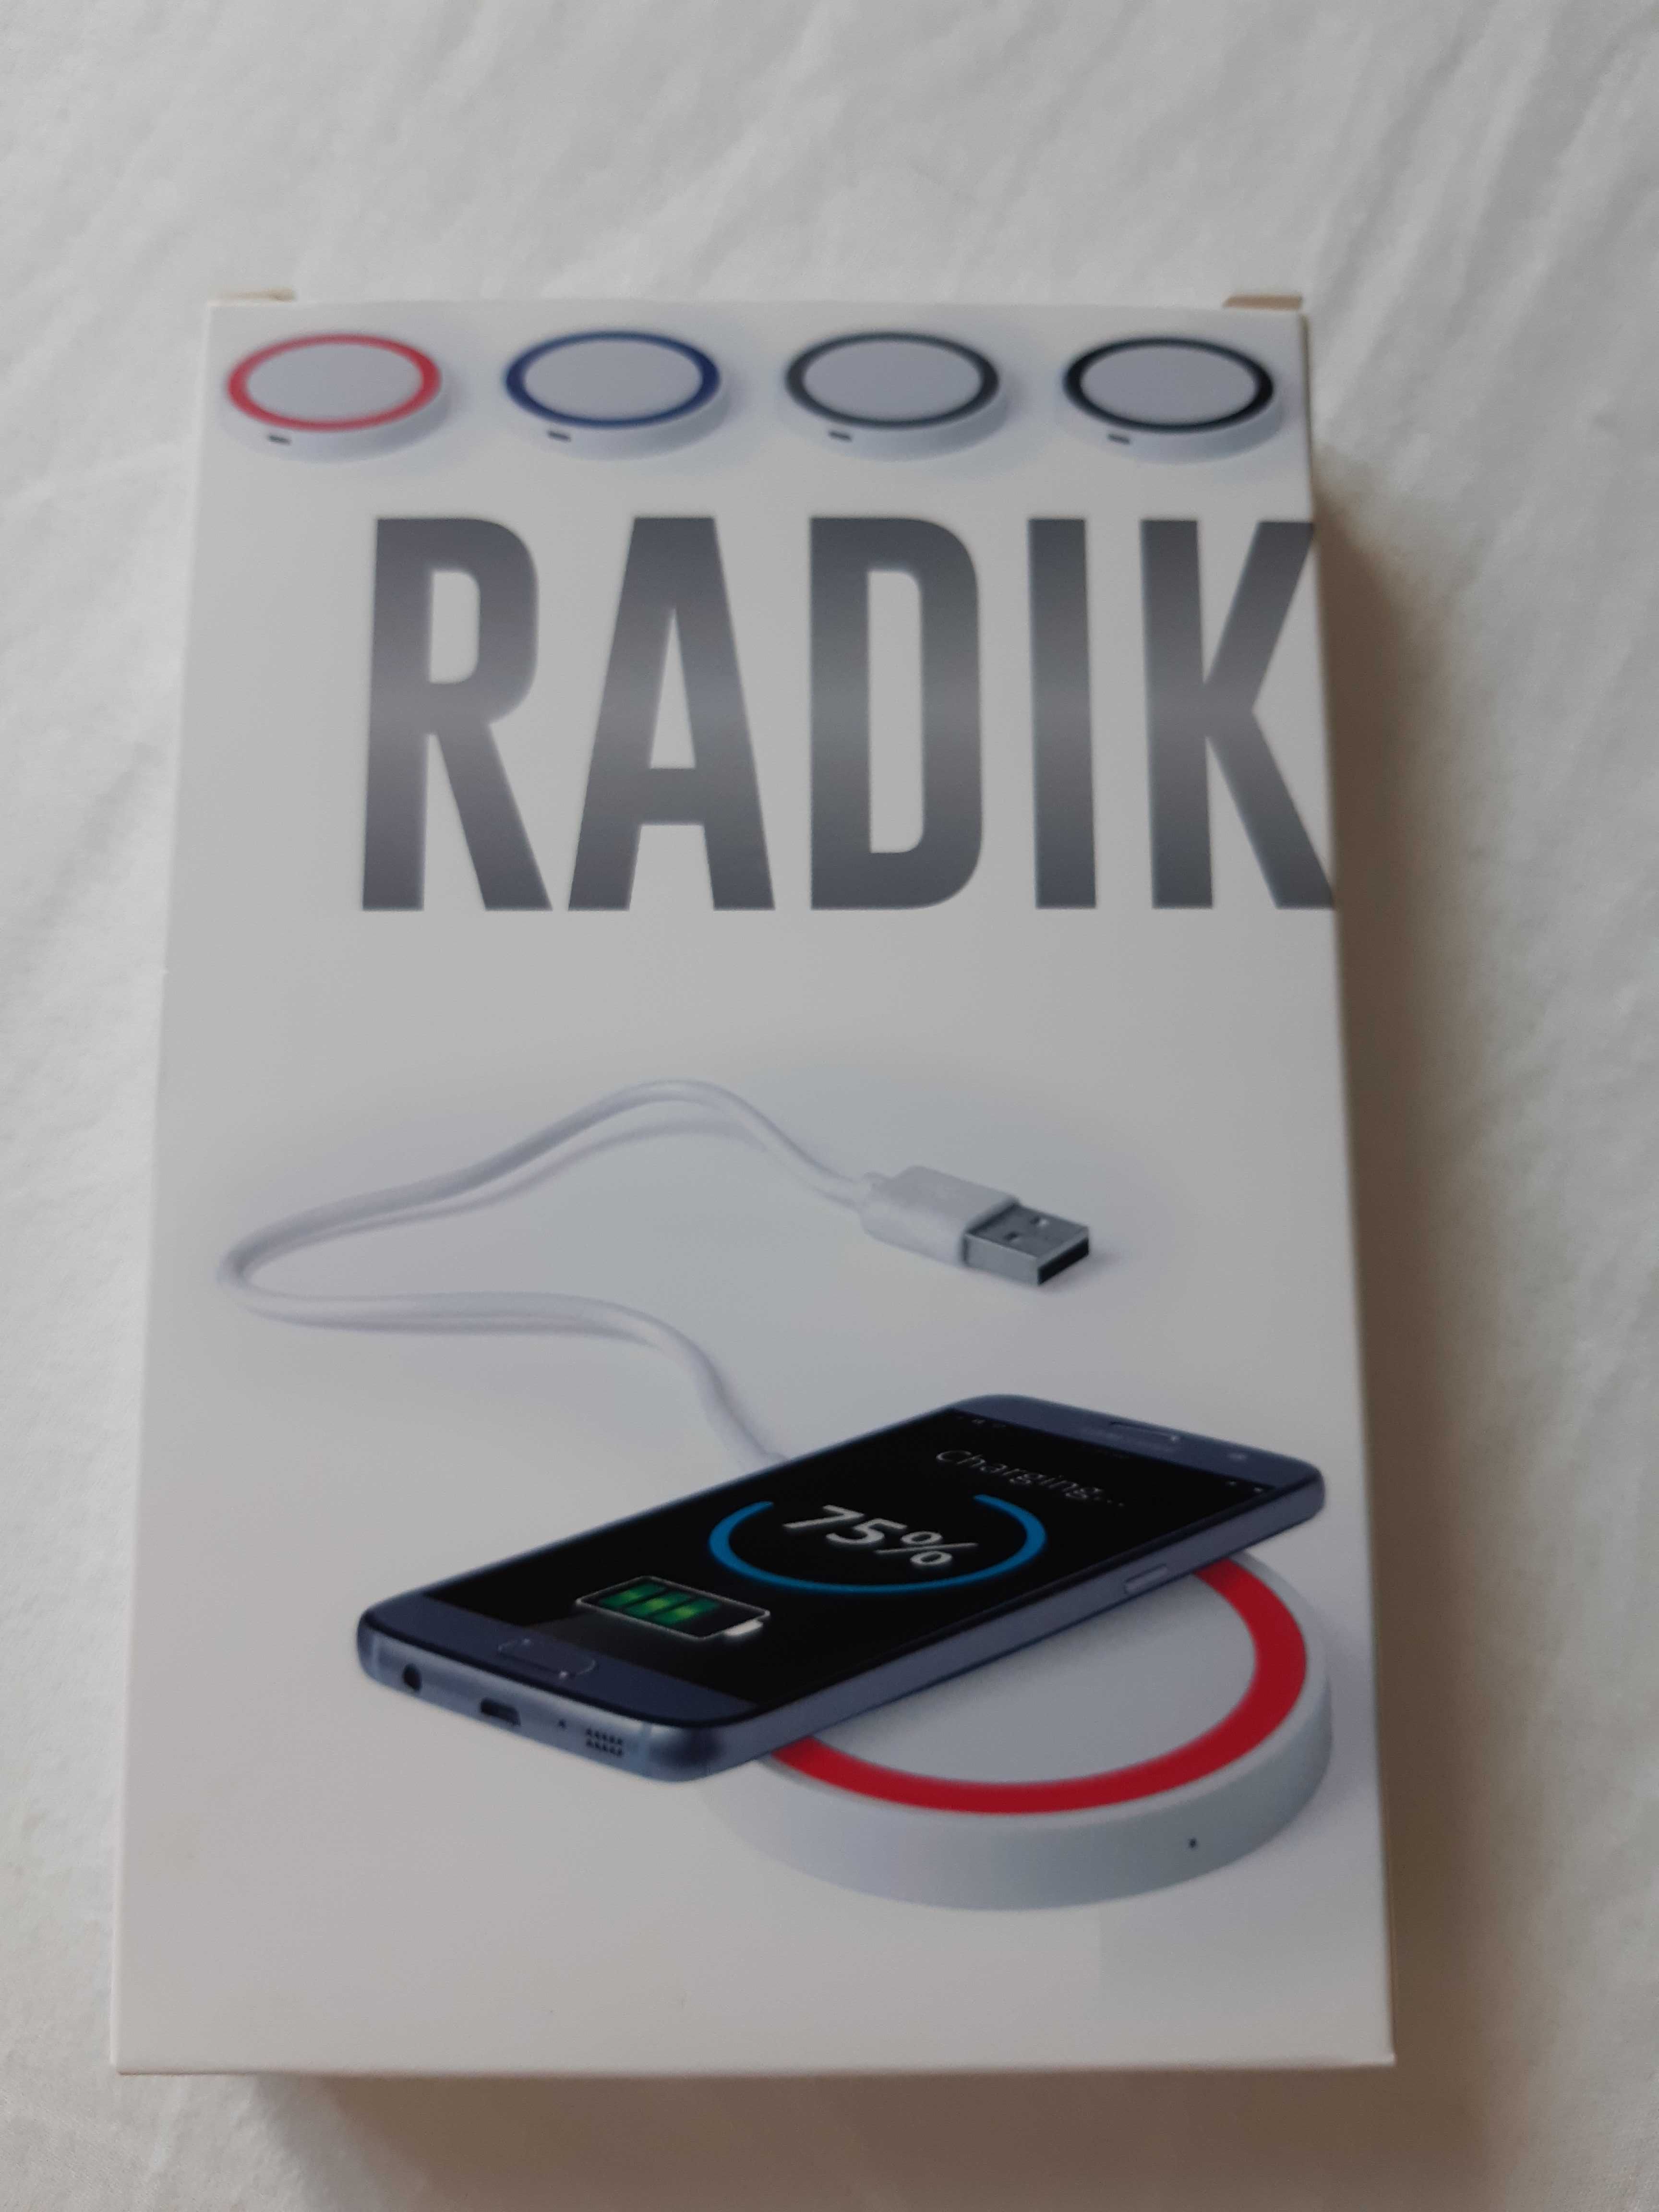 Indukcyjna bezprzewodowa ładowarka do smartfona Radik nowa